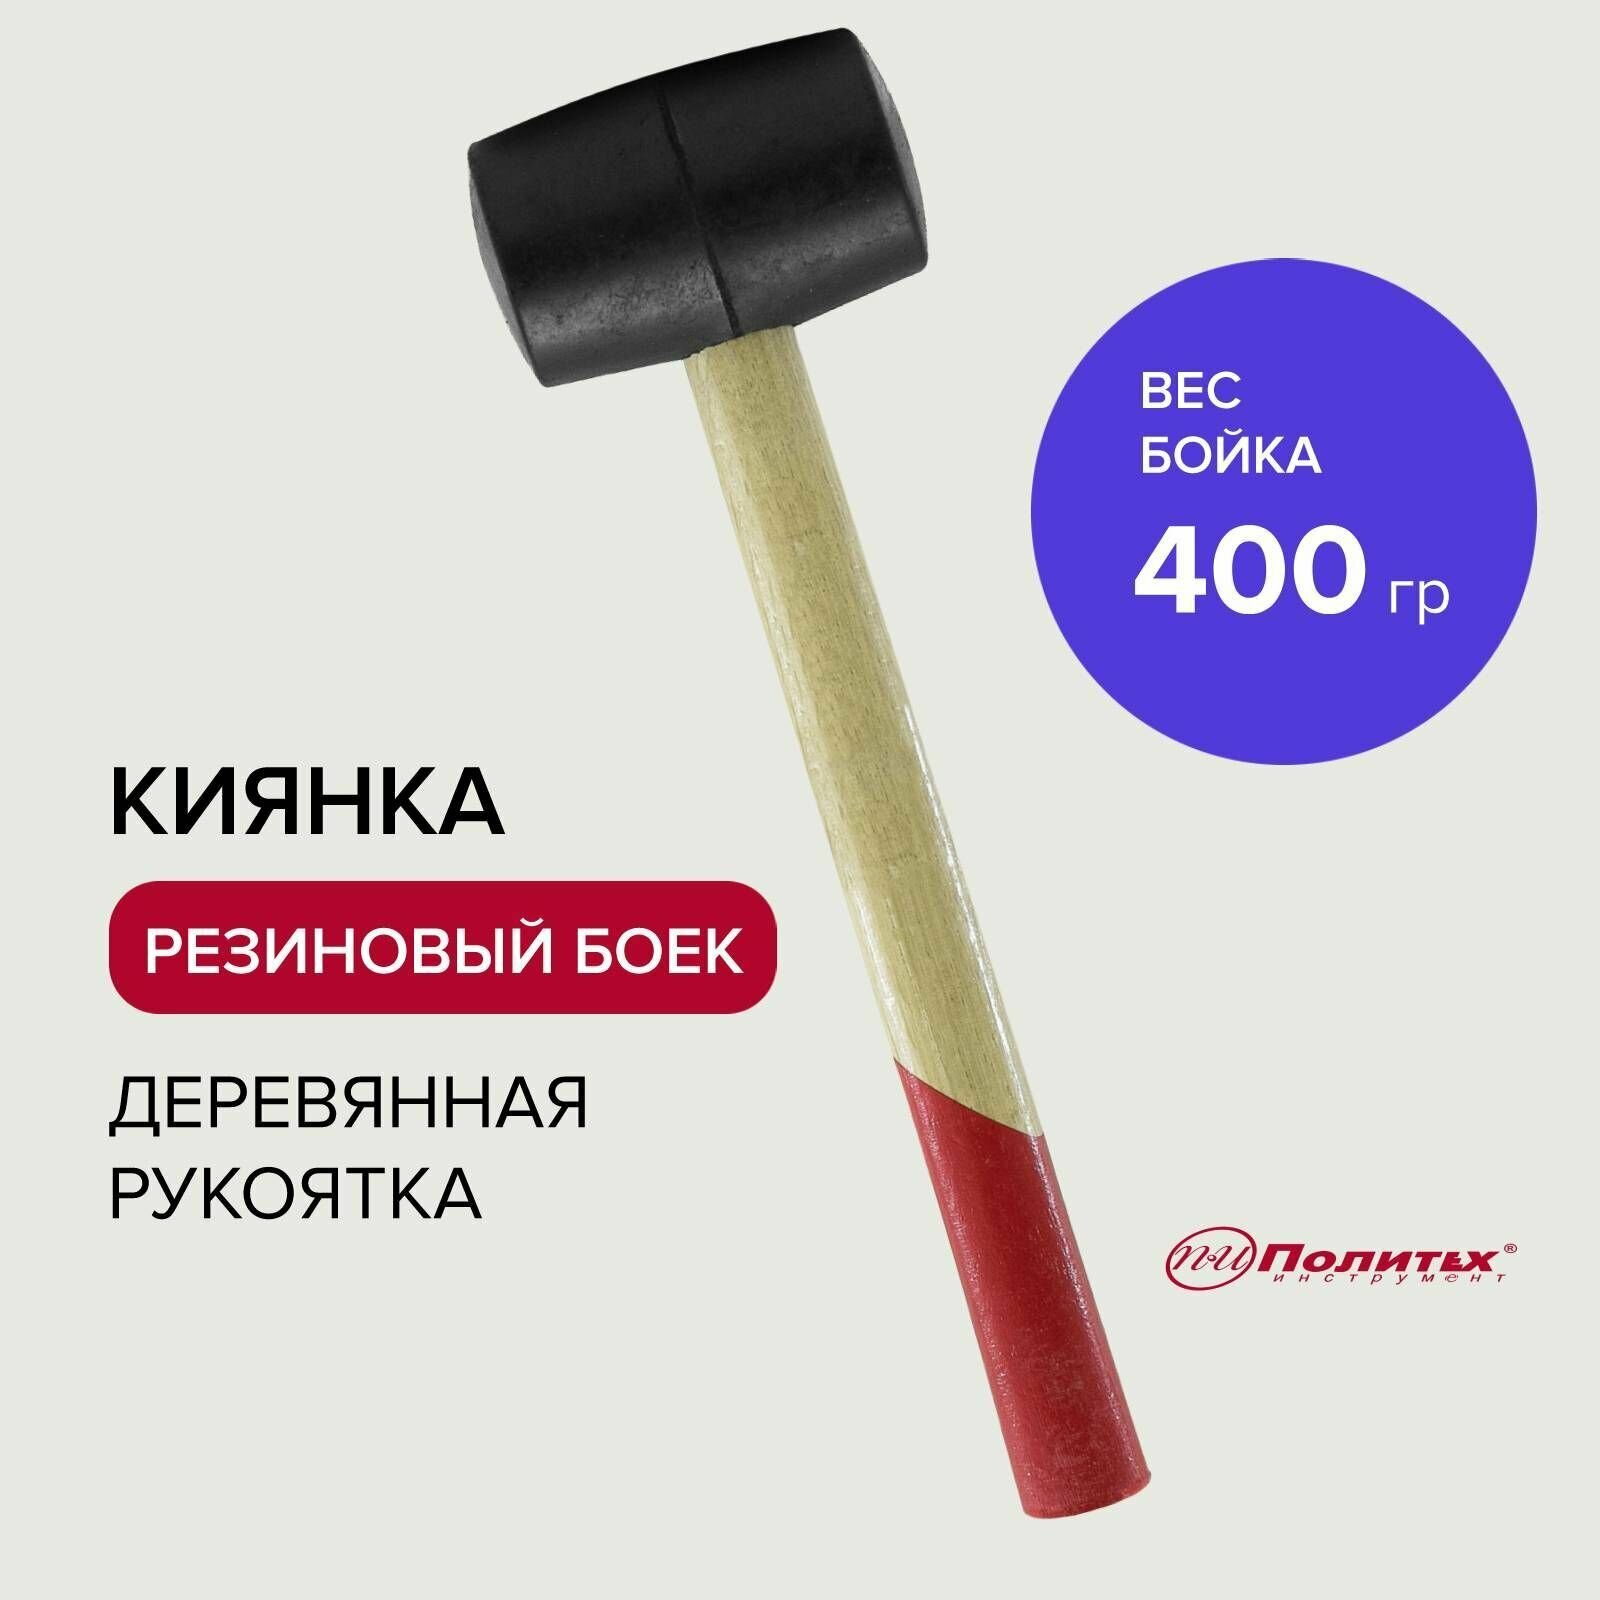 Киянка Политех Инструмент 400 г деревянная ручка